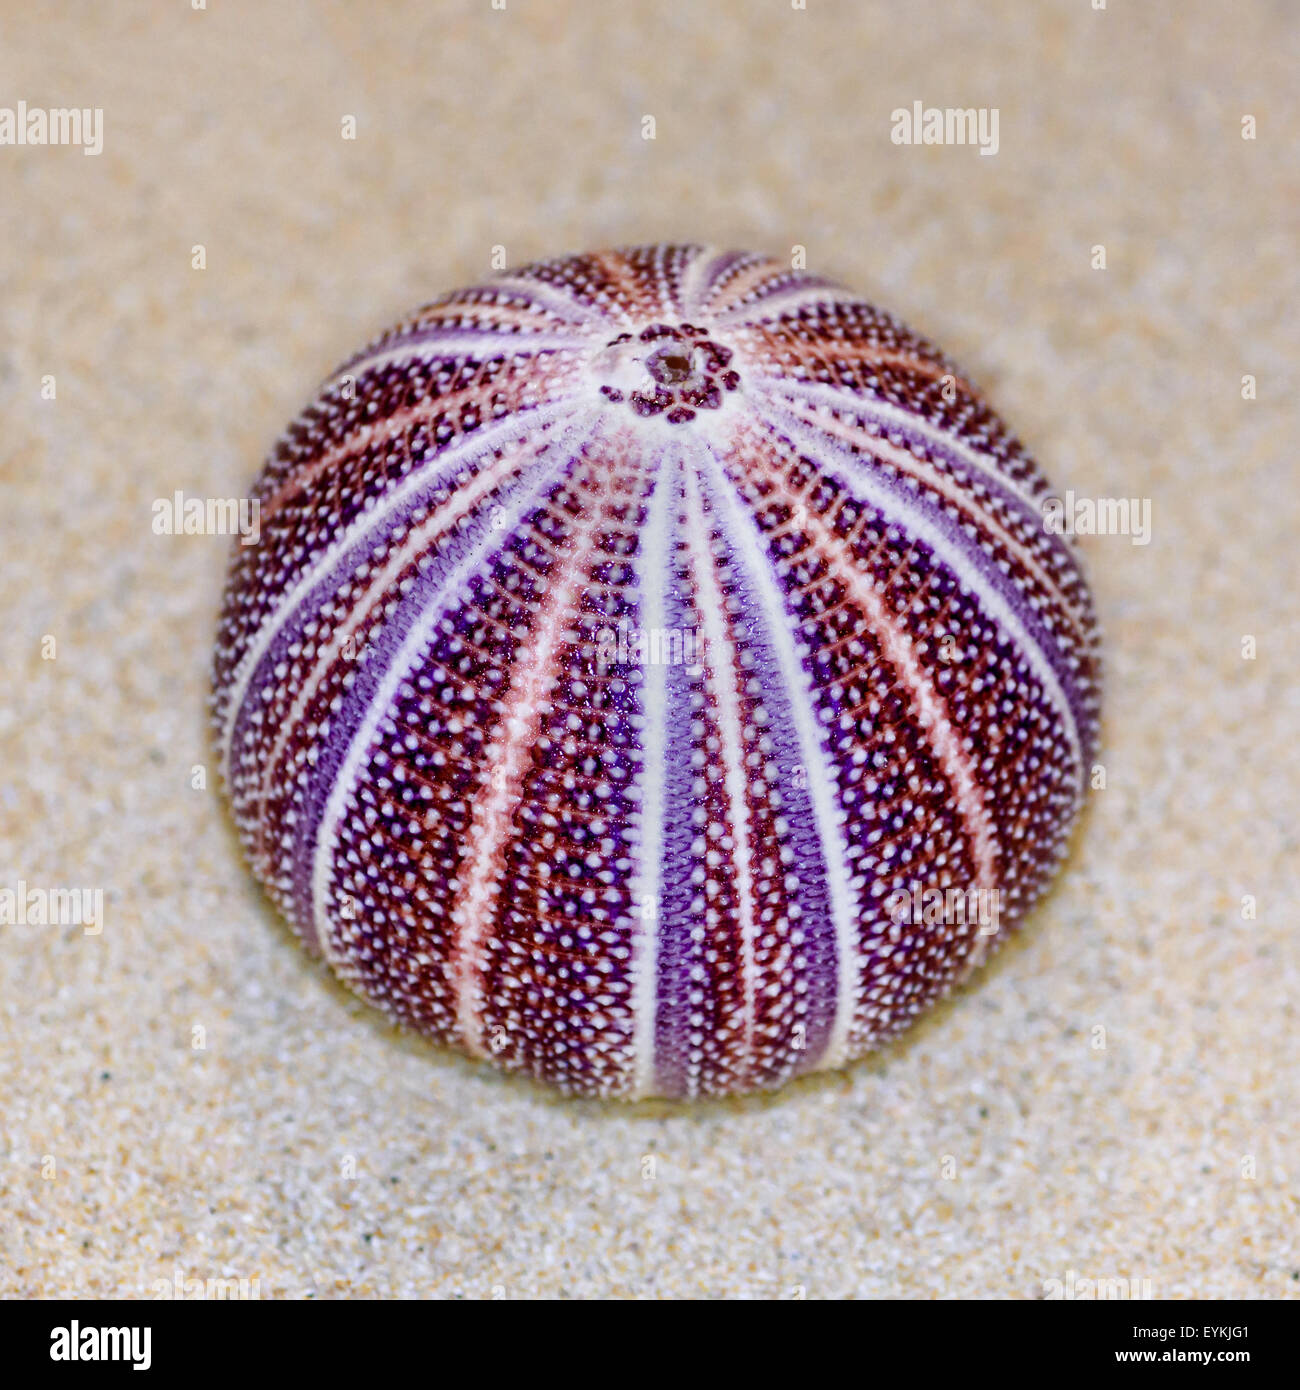 Guscio colorato di ricci di mare o di Urchin è rotondo e spinose con viola e rosso sulla sabbia Foto Stock